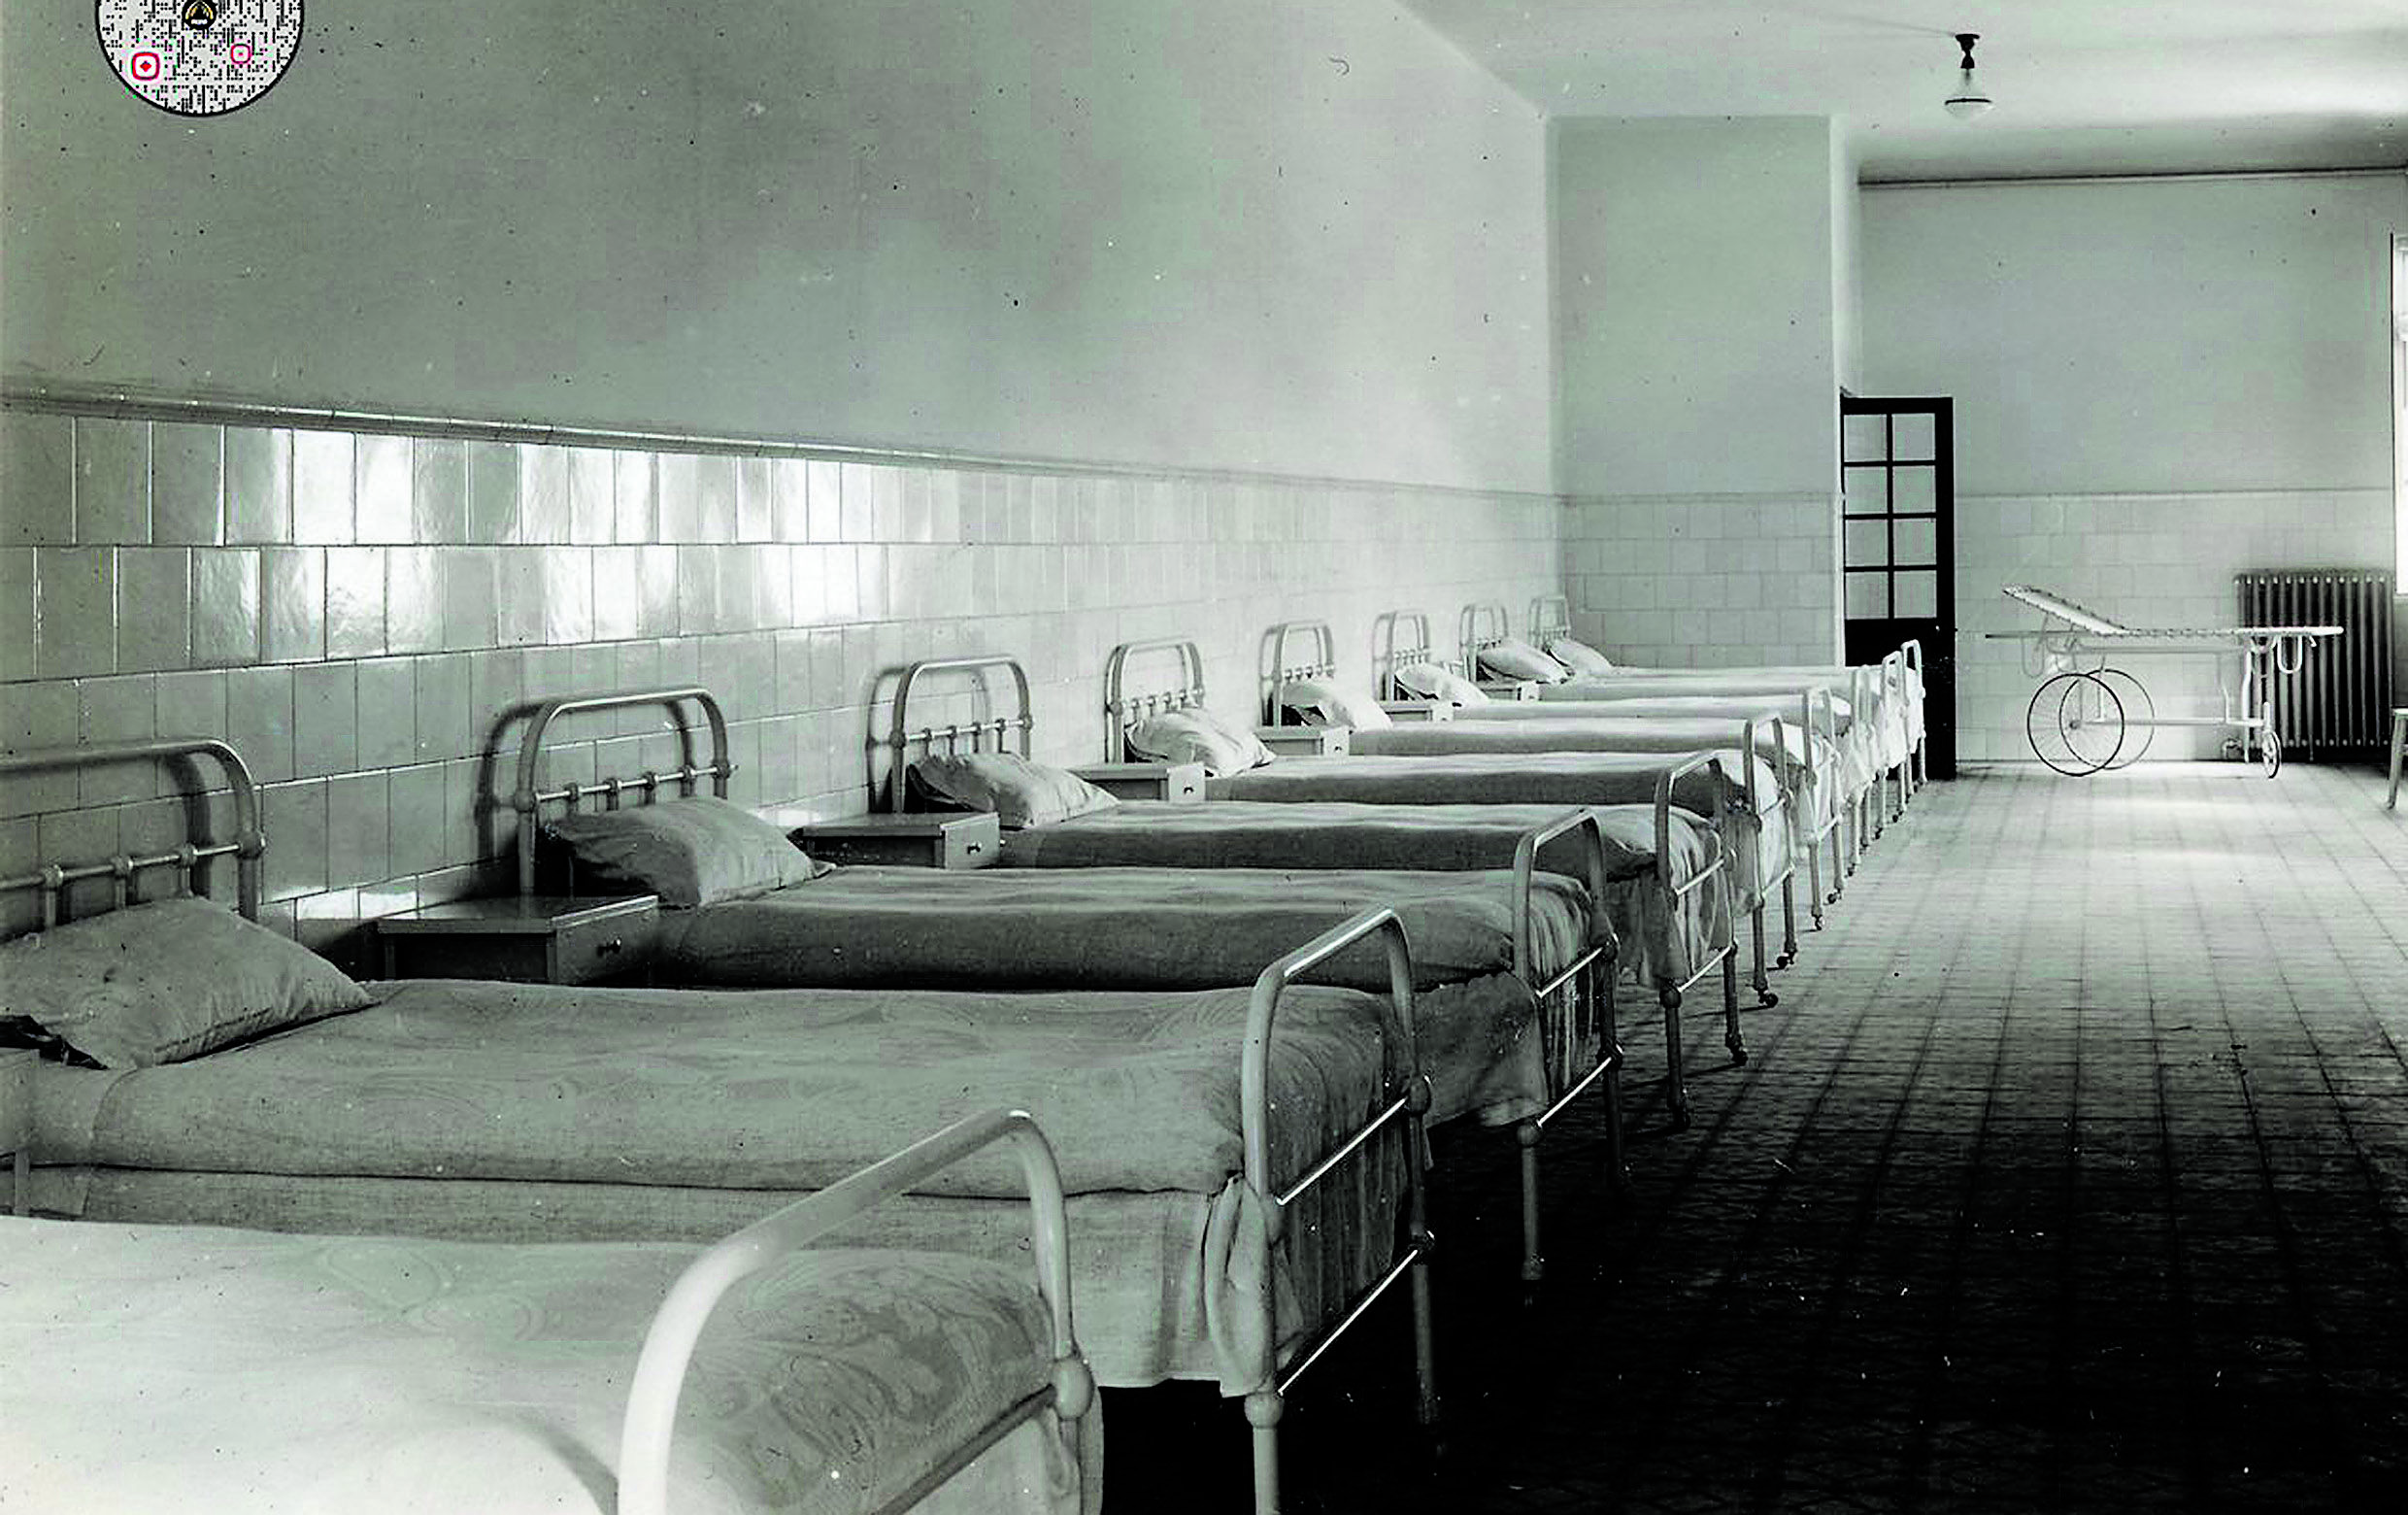 Las ocho camas del hospital Izaguirre de Hulleras de Sabero. | L.N.C.